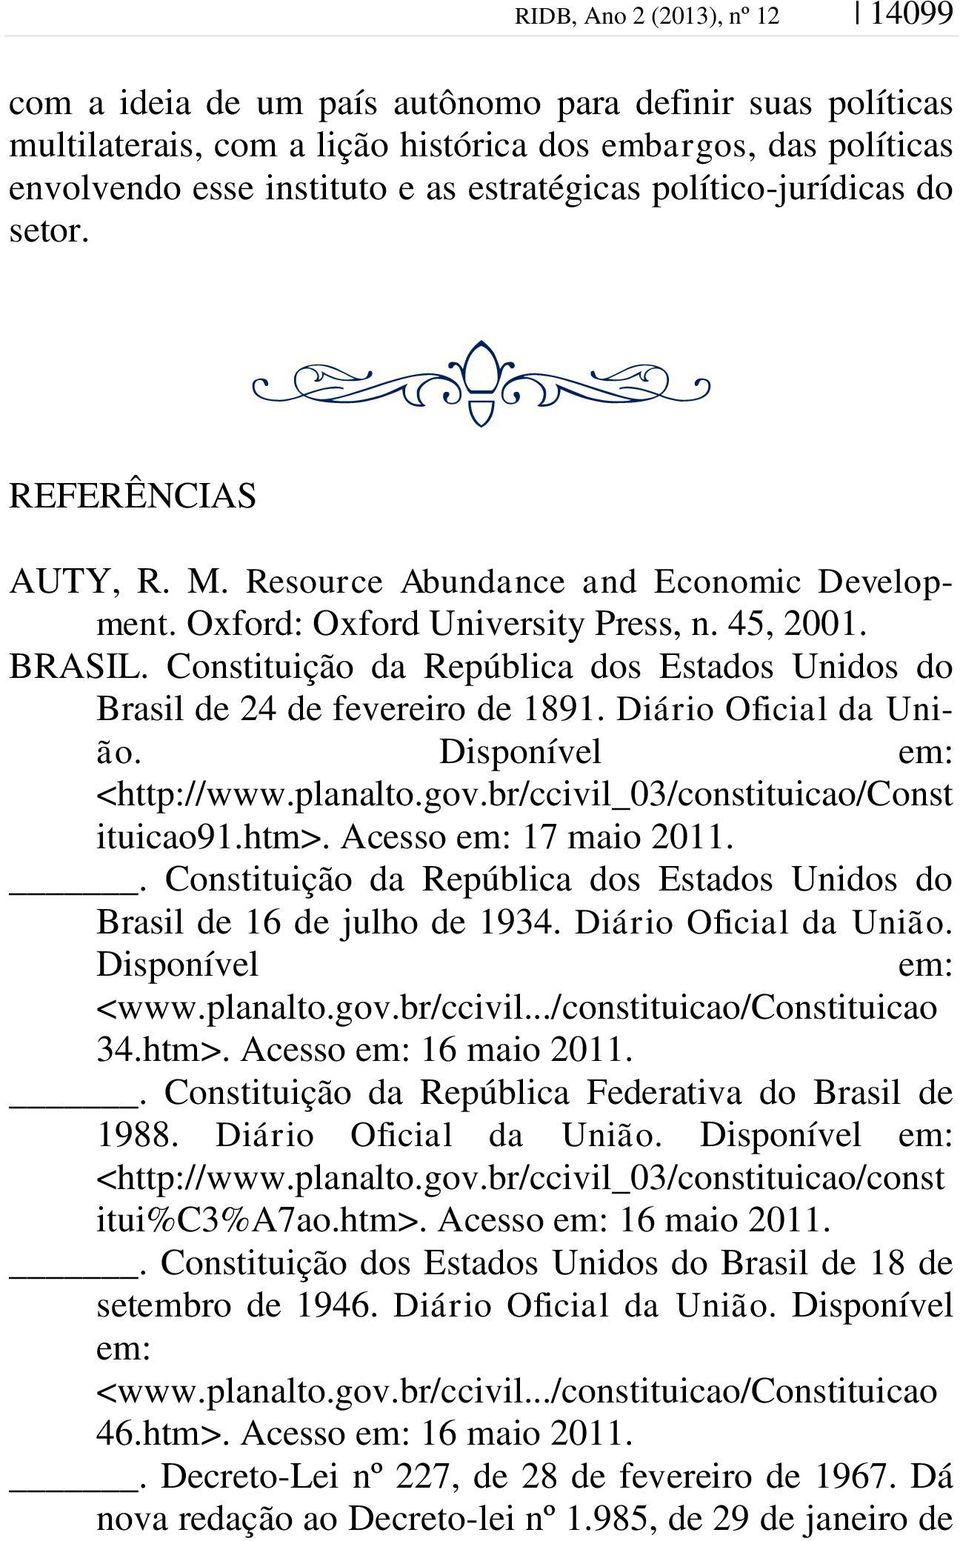 Constituição da República dos Estados Unidos do Brasil de 24 de fevereiro de 1891. Diário Oficial da União. Disponível em: <http://www.planalto.gov.br/ccivil_03/constituicao/const ituicao91.htm>.